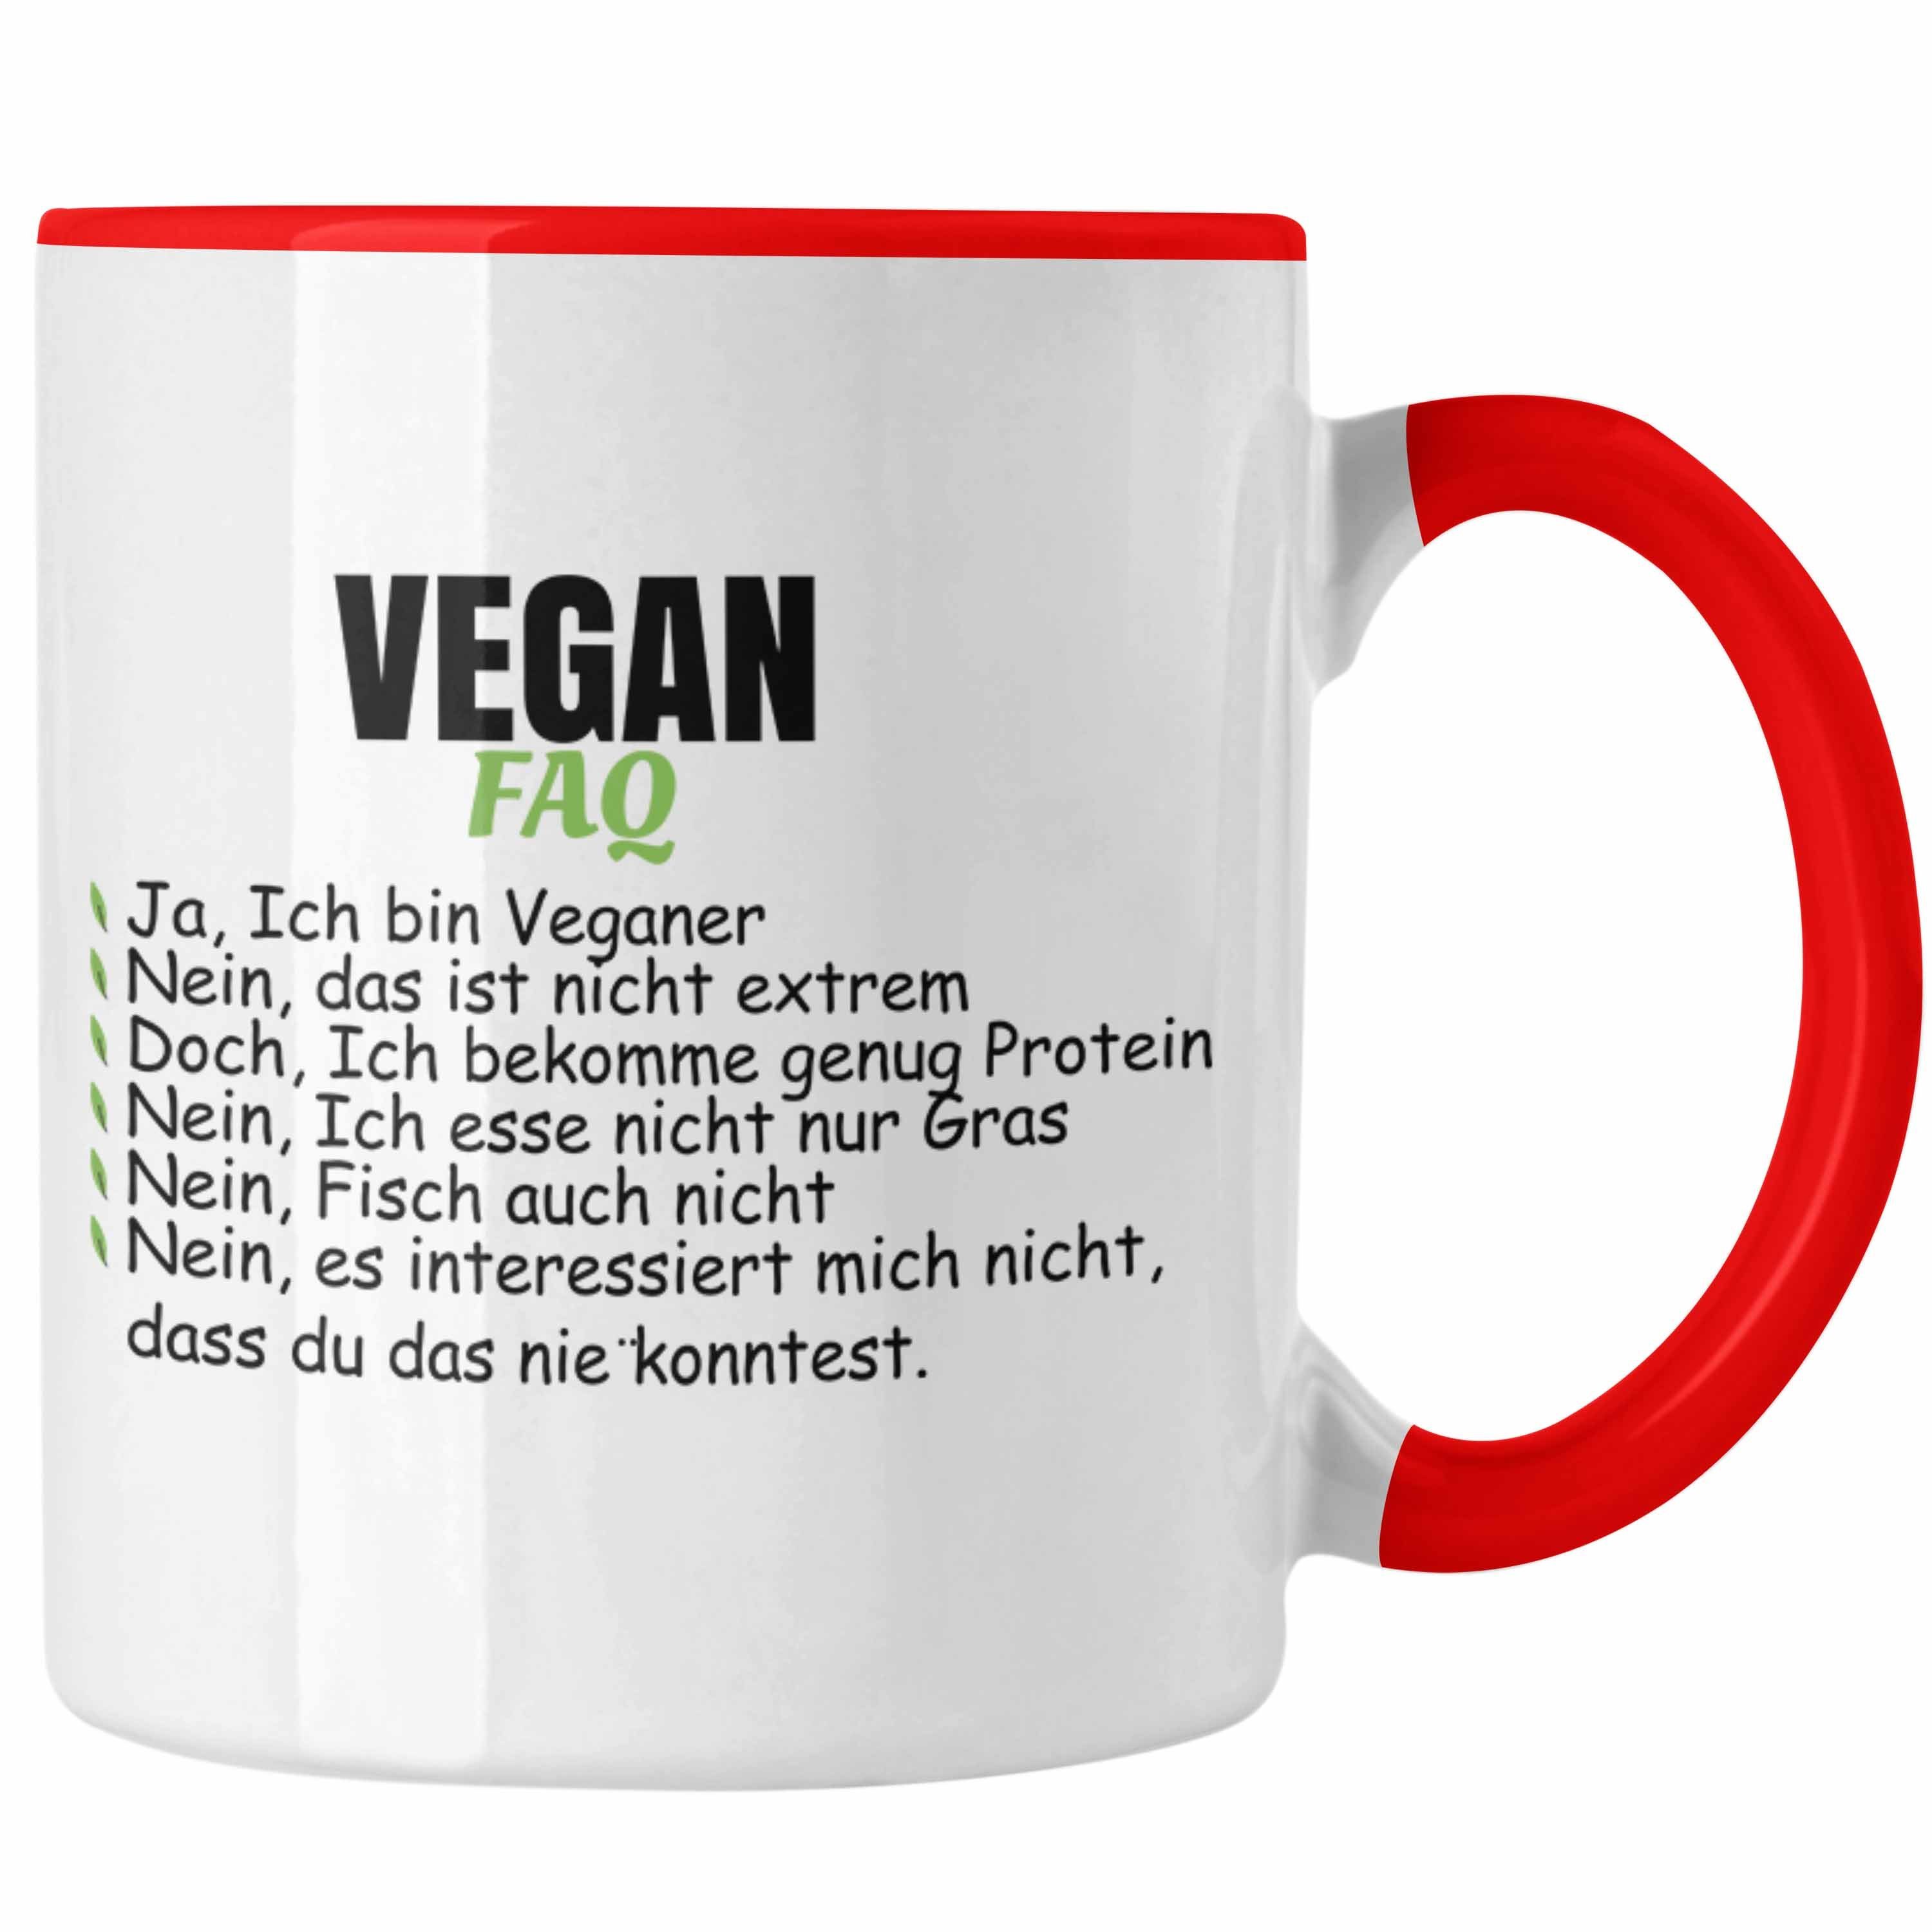 Trendation Tasse Trendation - Veganer Geschenkidee Vegane Lebensweise Spruch Spruch Lustiger Geschenk Rot Tasse FAQ Vegan